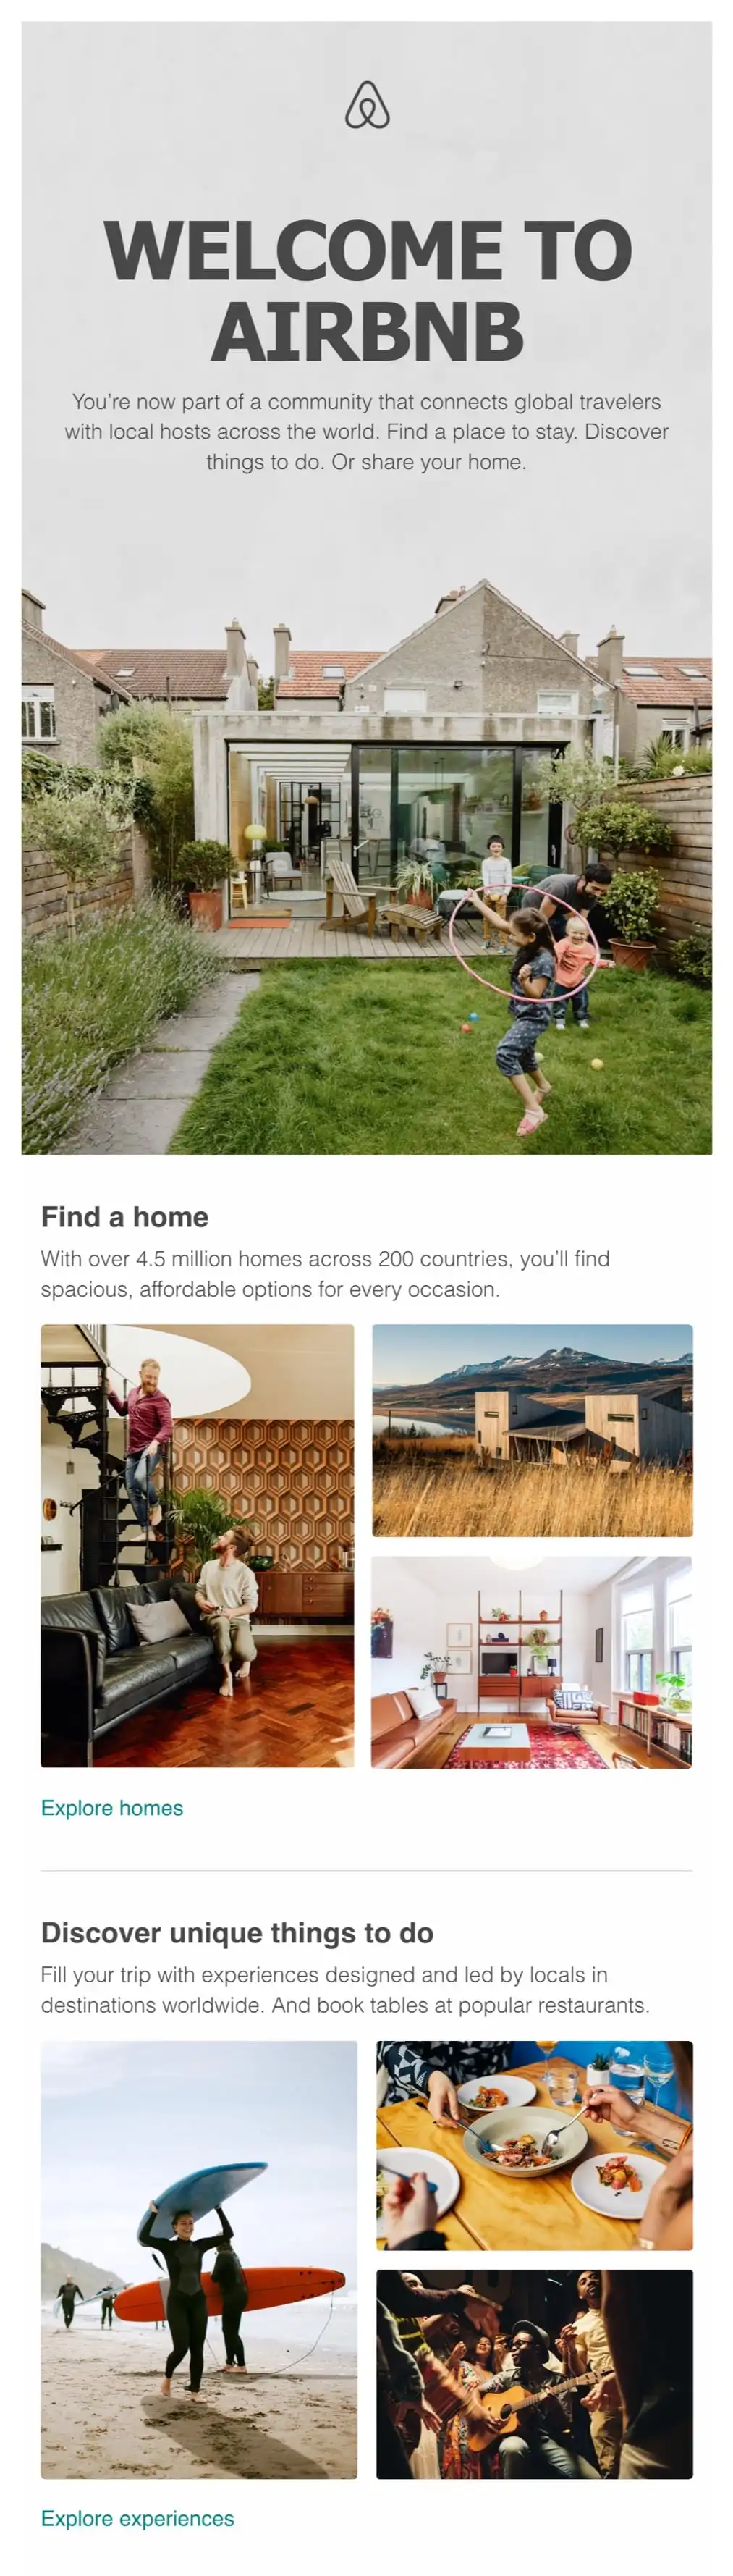 bun venit-e-mail-exemplu-airbnb